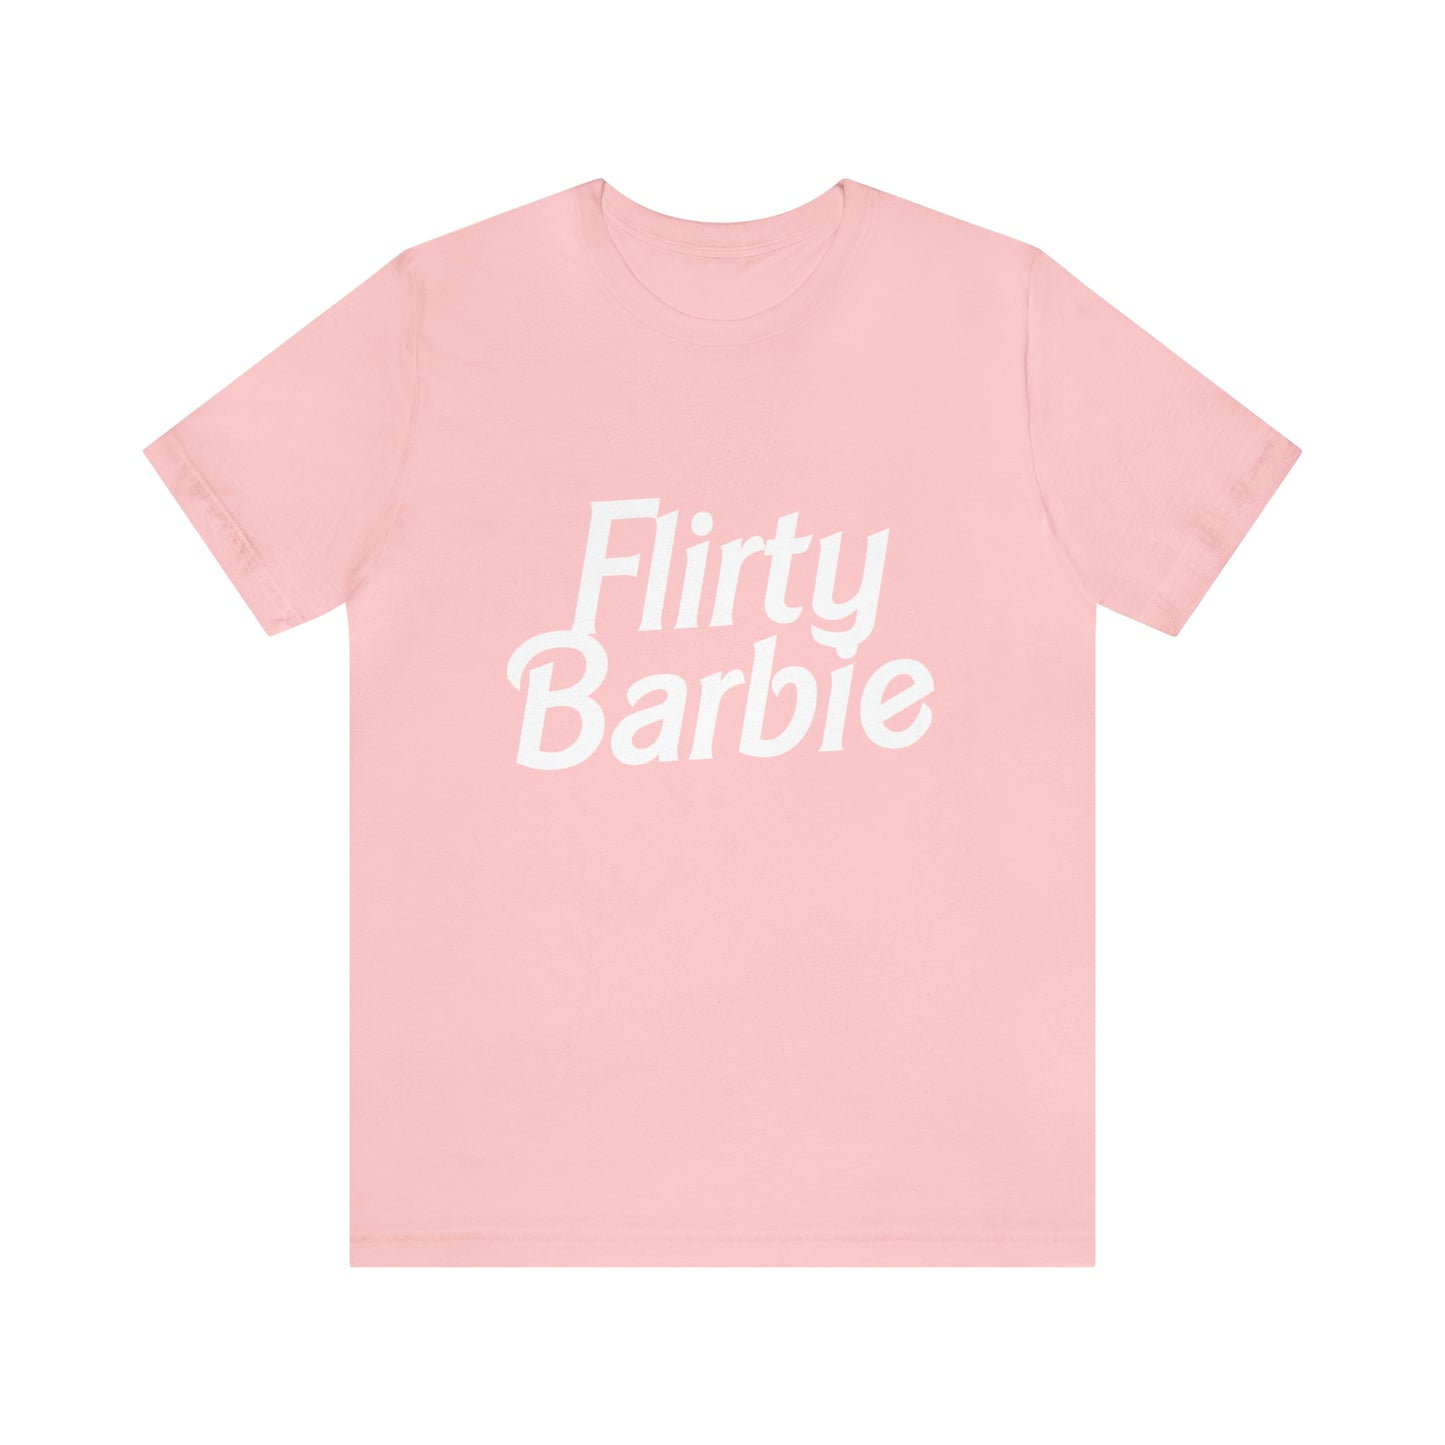 Flirty Barbie